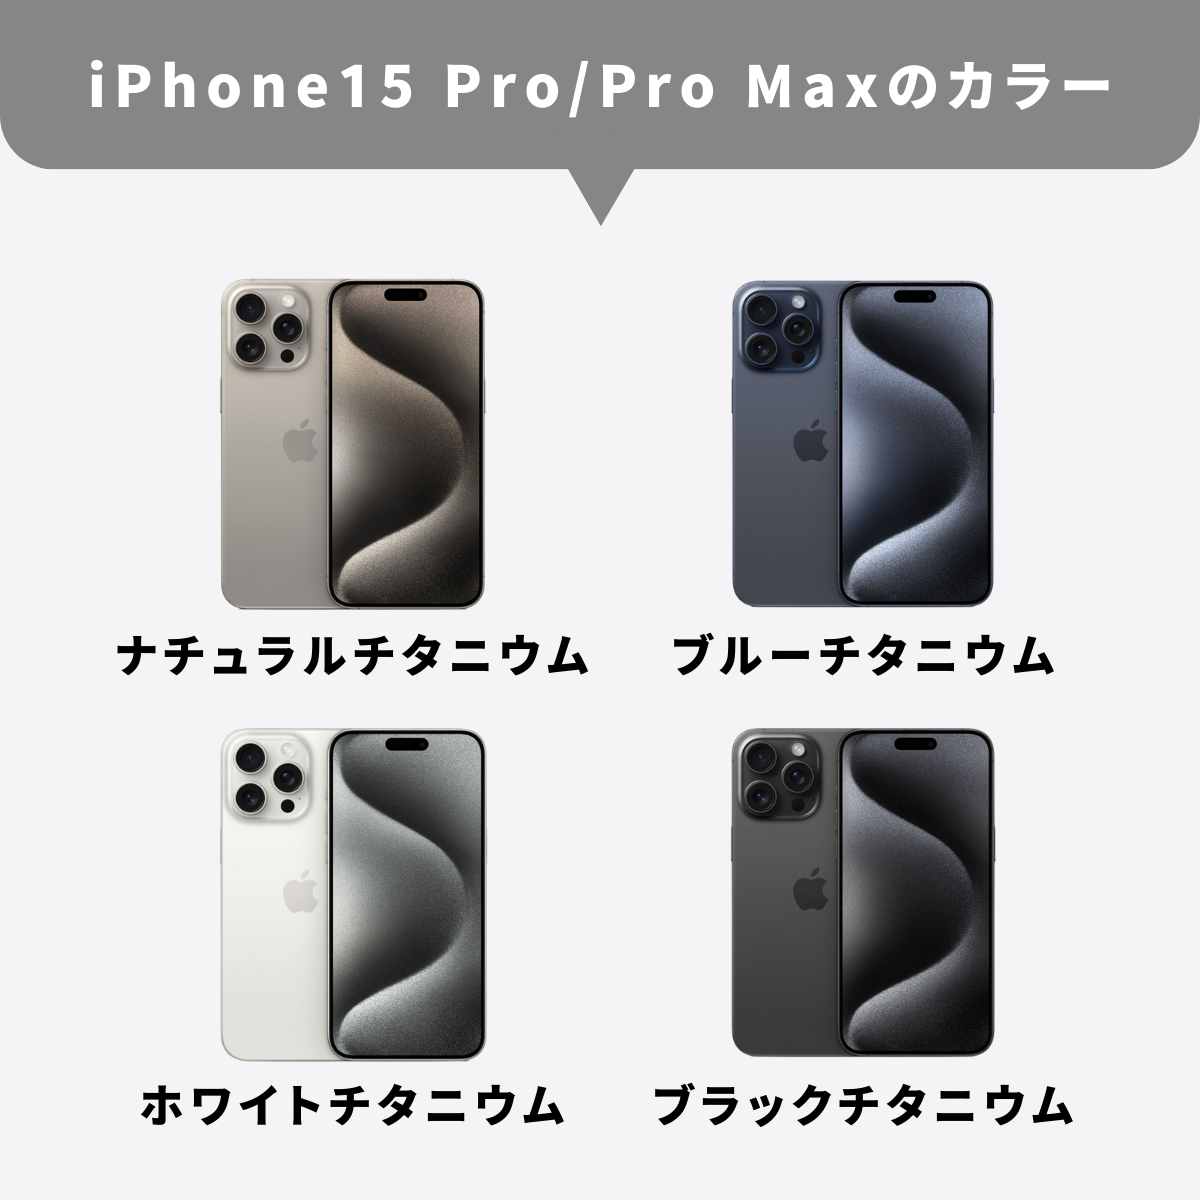 「iPhone15 Pro Max」だけペリスコープレンズが搭載？